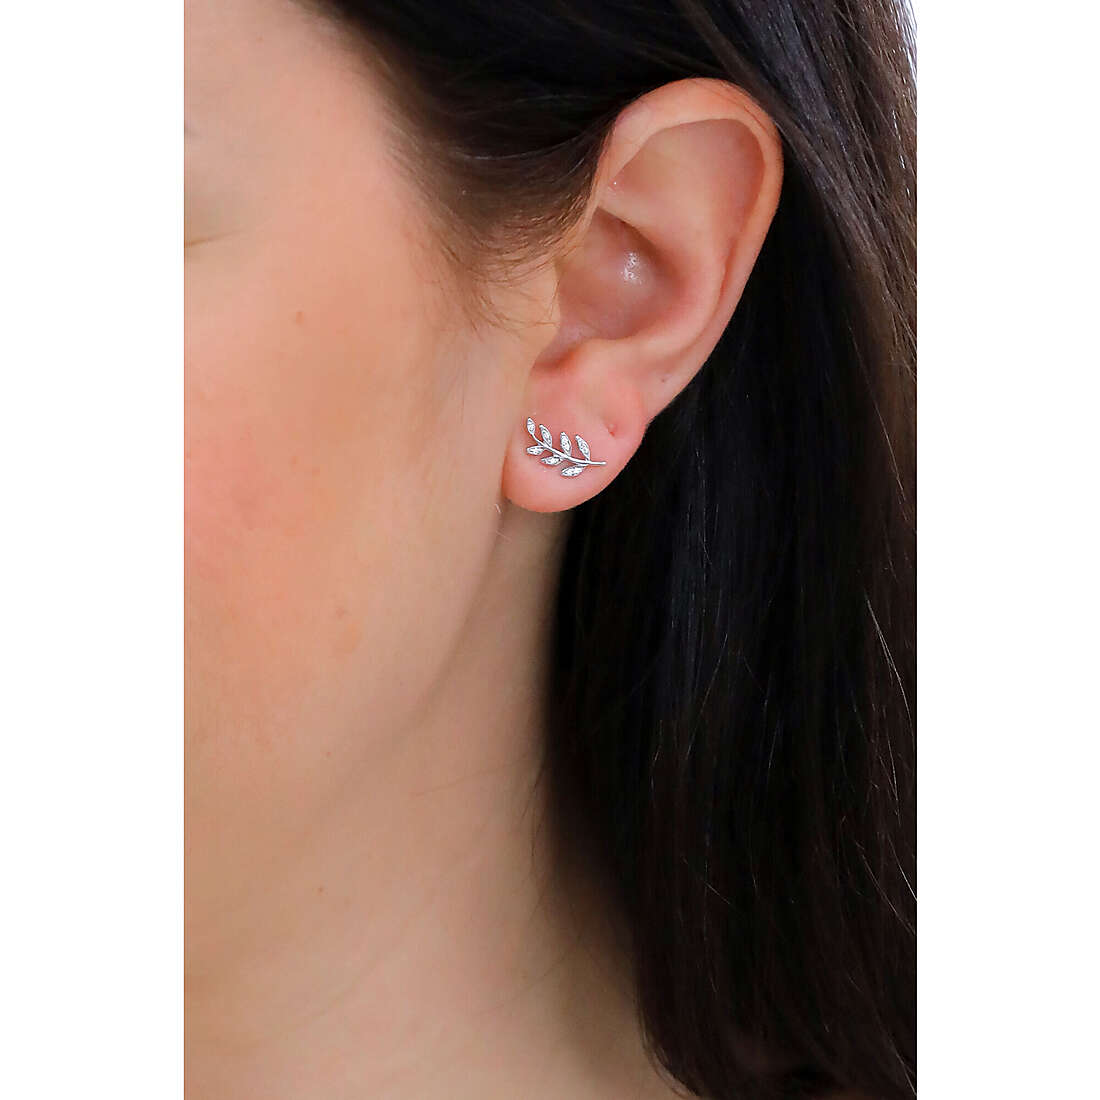 Fossil earrings Sterling Silver woman JFS00483040 wearing